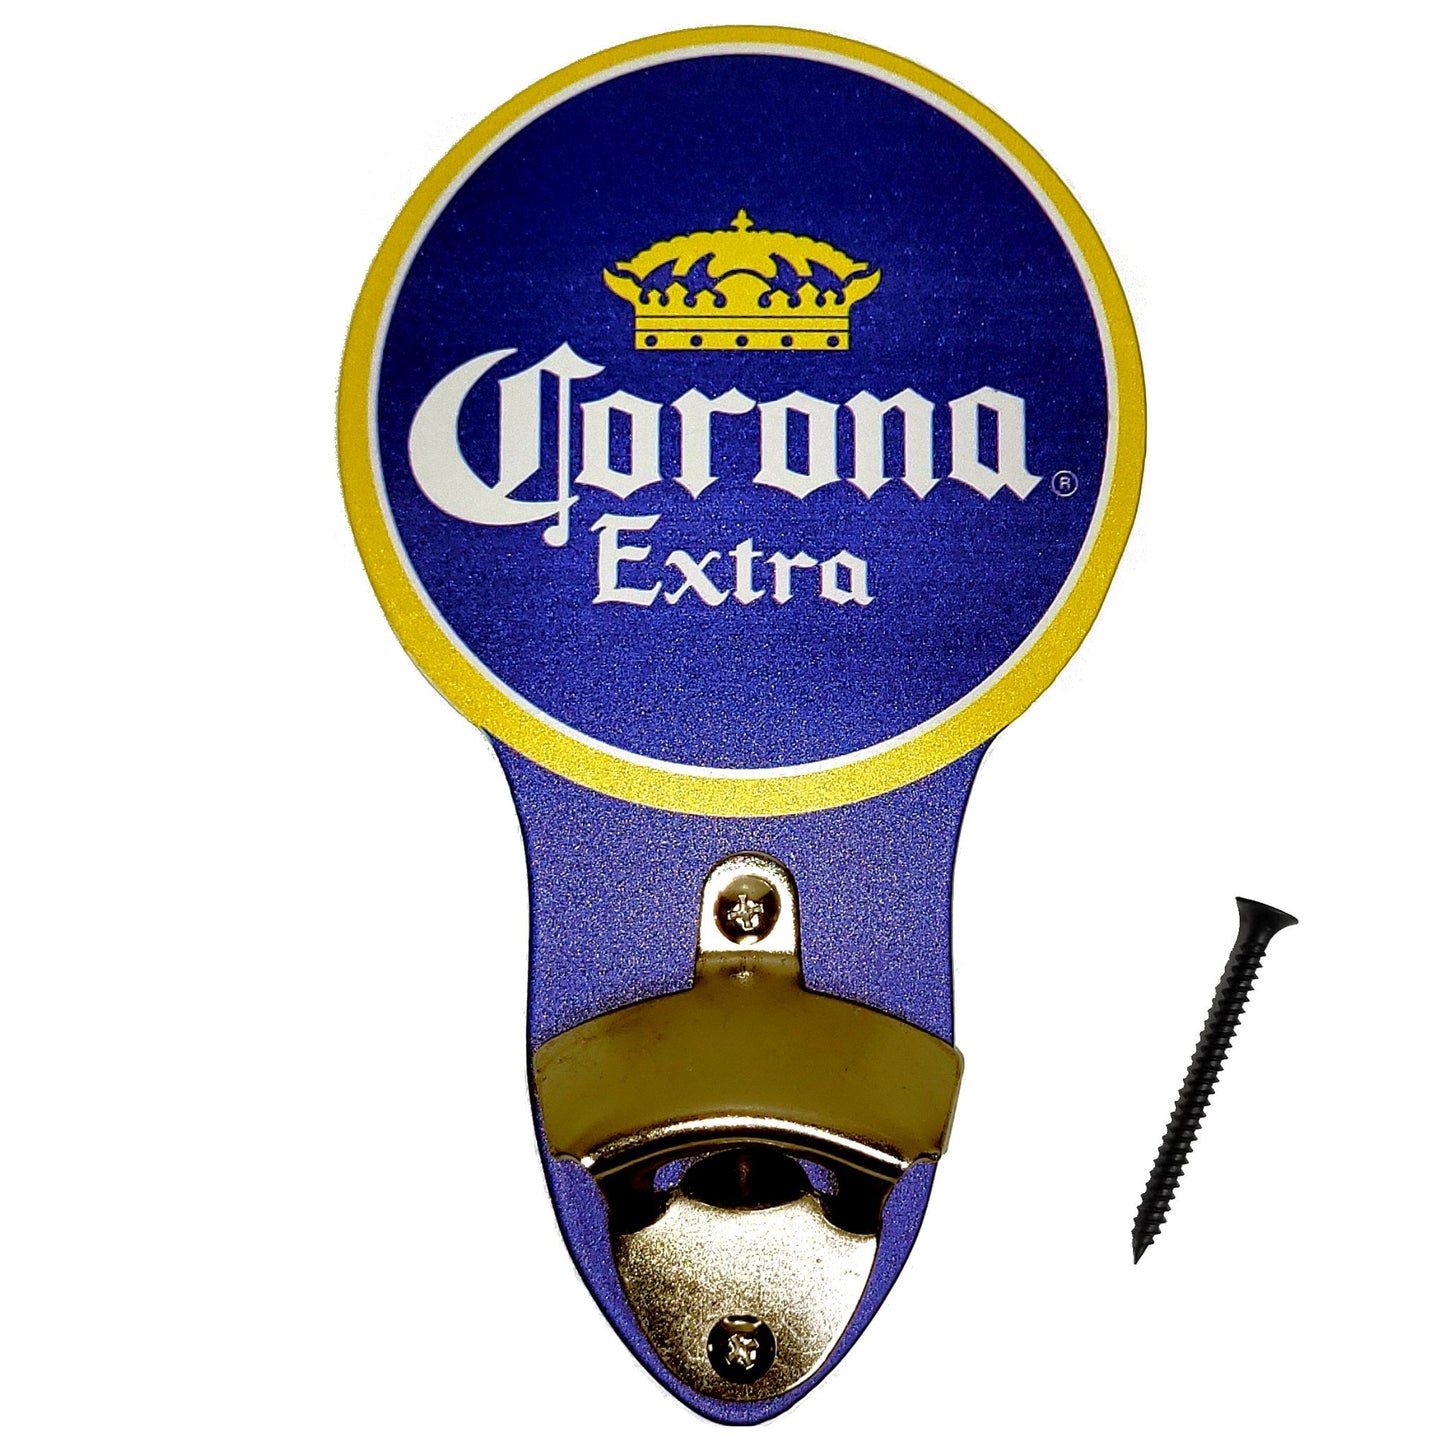 Corona Extra Yellow Circle Metal Sign Bottle Opener